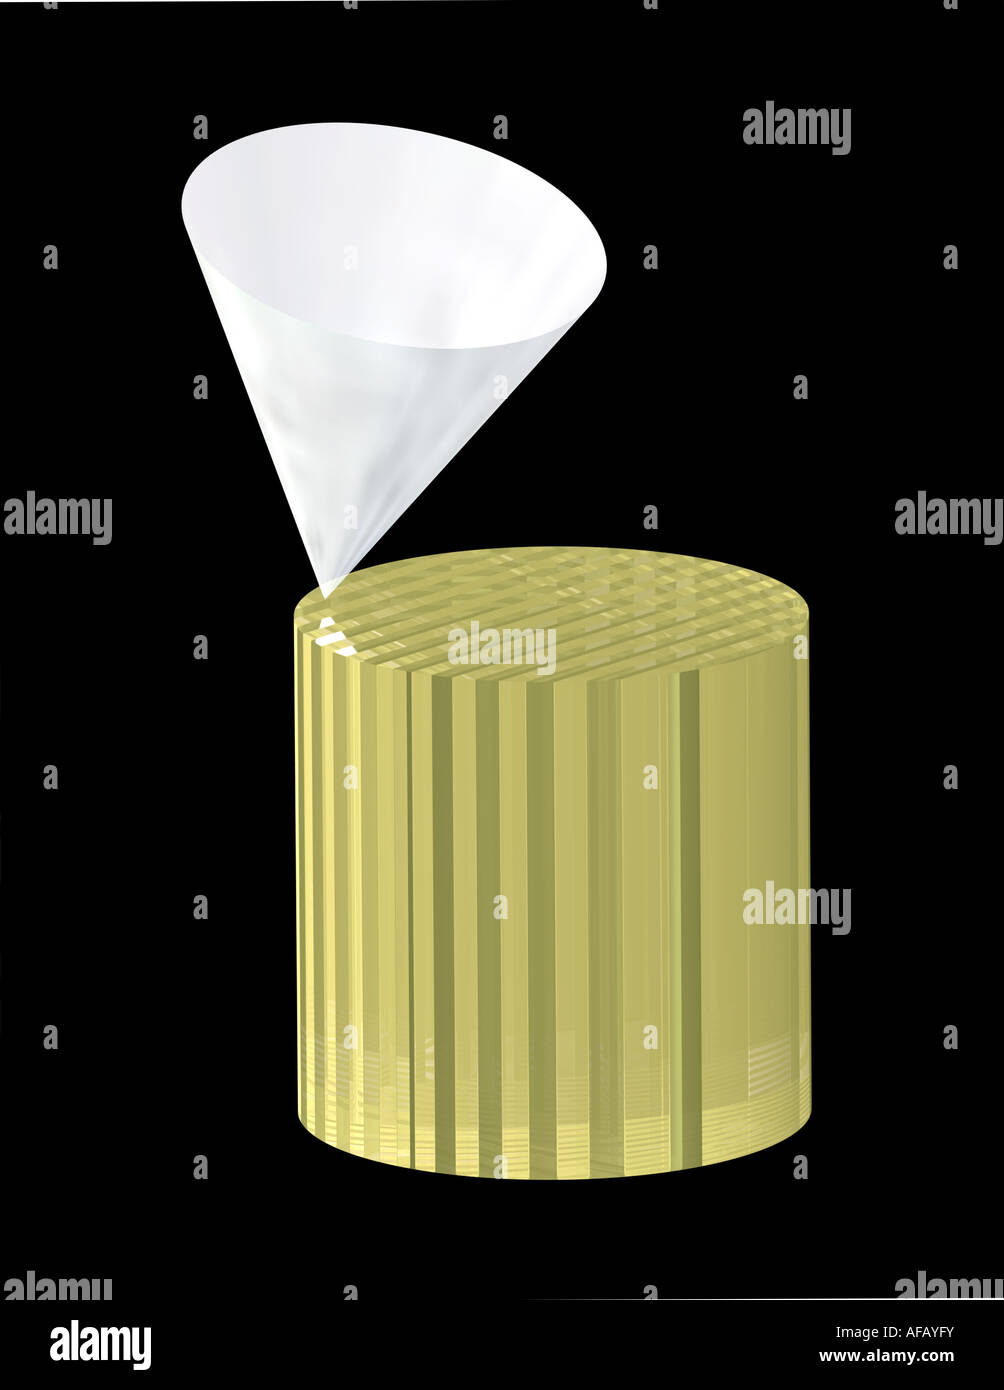 Immagine 3D rappresentata da un cono in equilibrio su un cilindro su sfondo nero Foto Stock